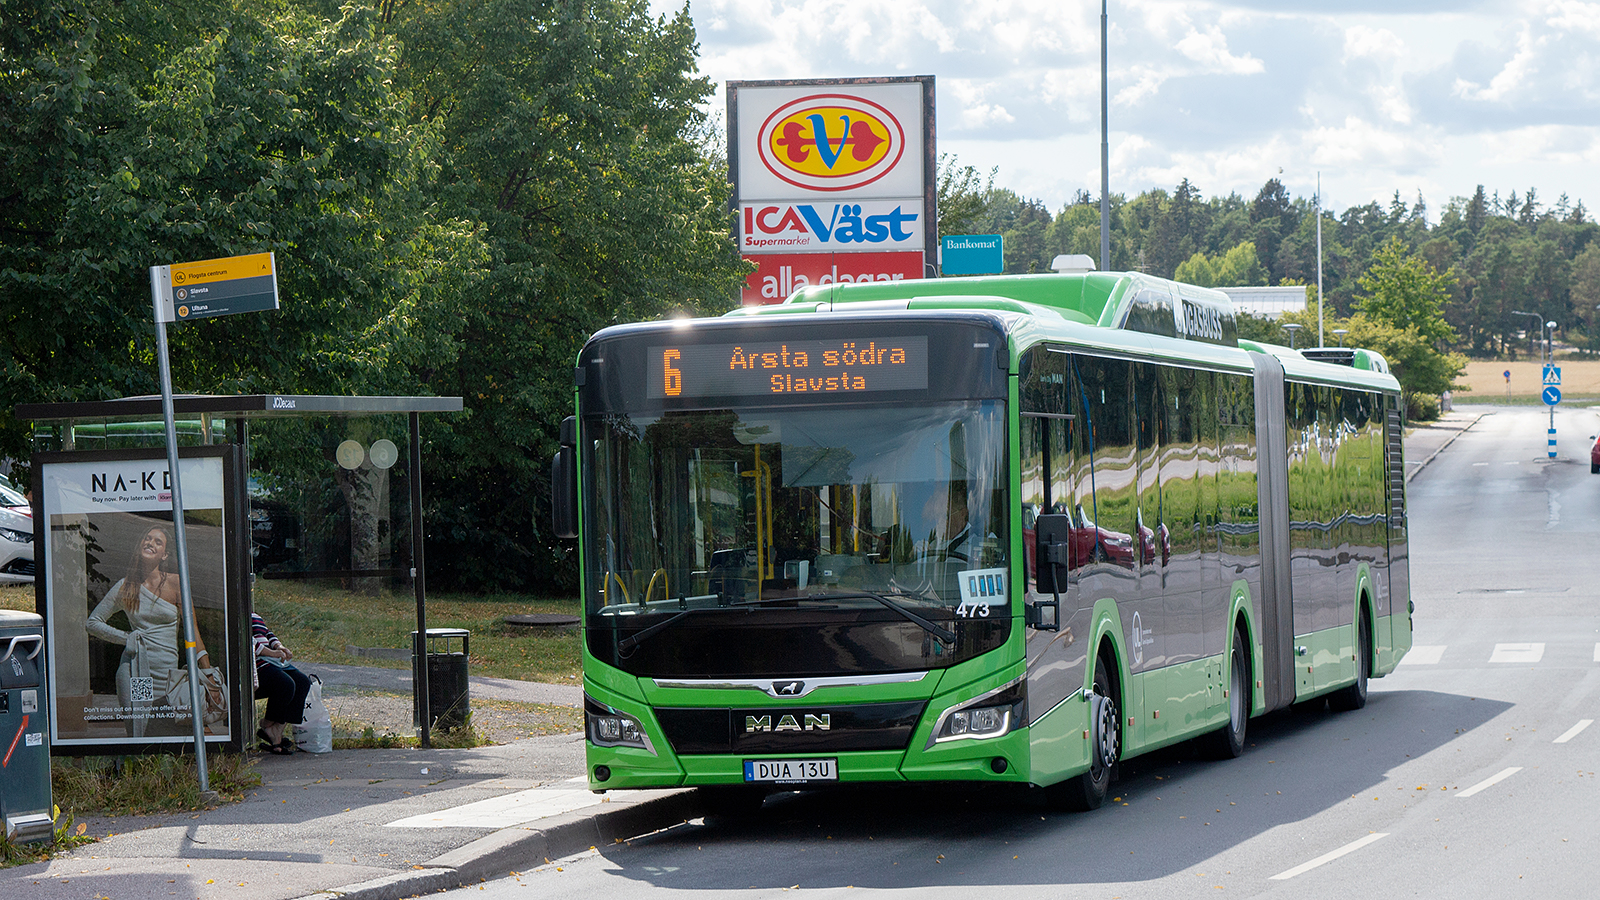 Vi driver de flesta av våra bussar med miljövänlig biogas som är lokalt producerad, t.ex. denna biogasledbuss med lätthybridteknik